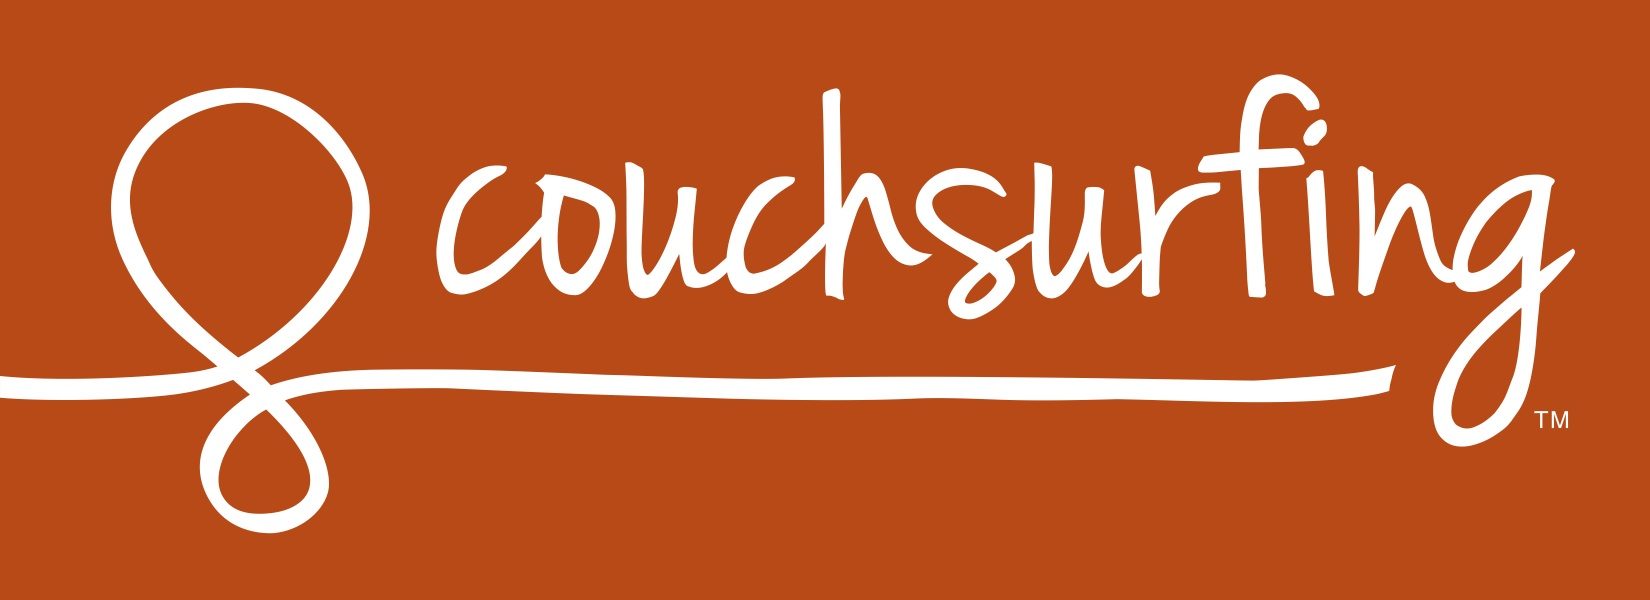 Il logo di couchsurfing